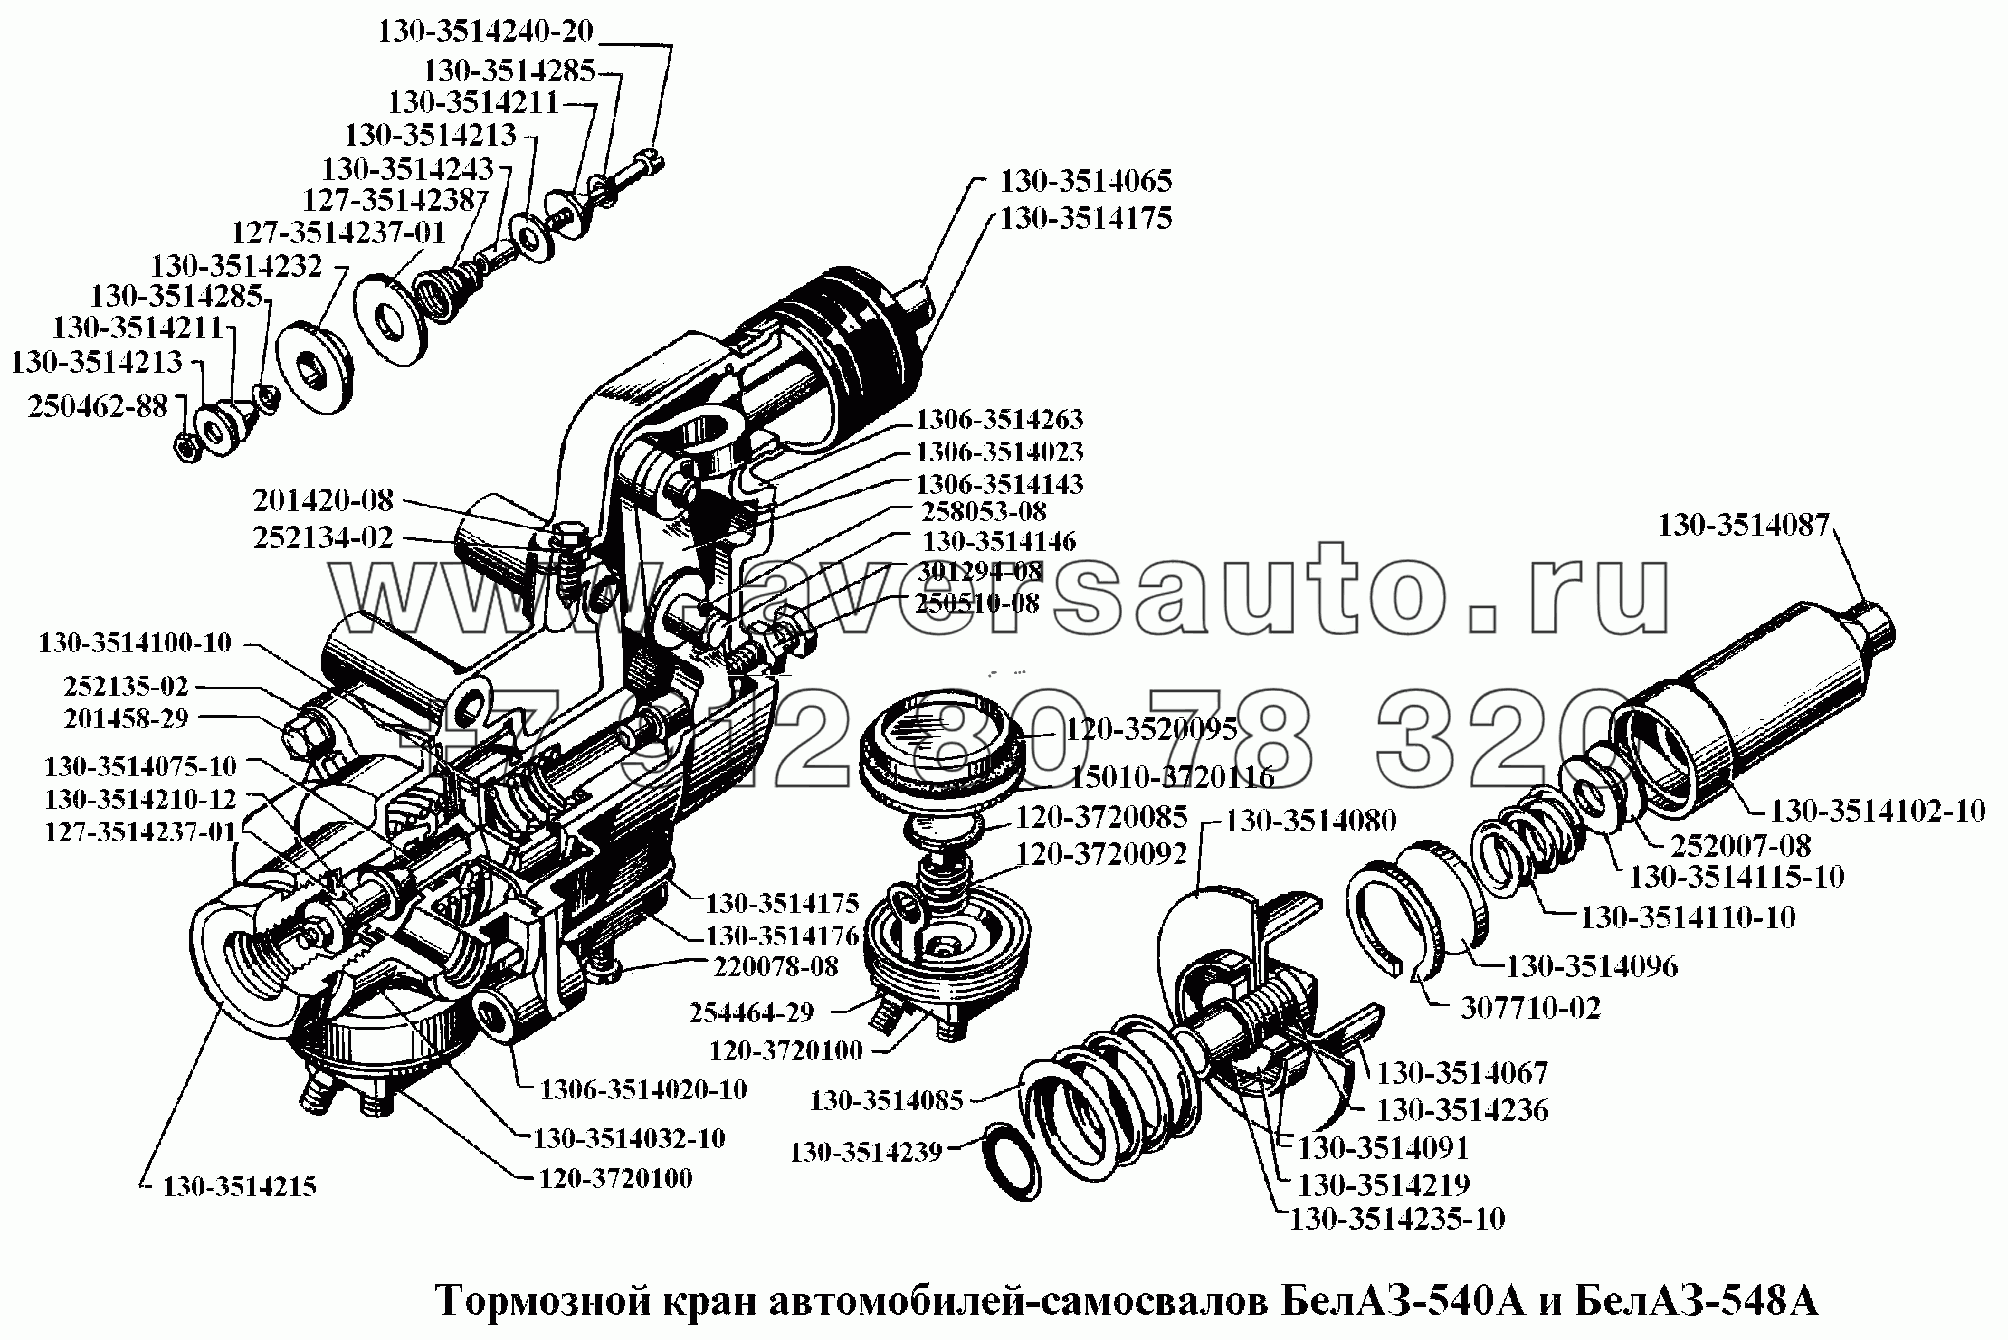 Тормозной кран автомобилей-самосвалов БелАЗ-540А и БелАЗ-548А